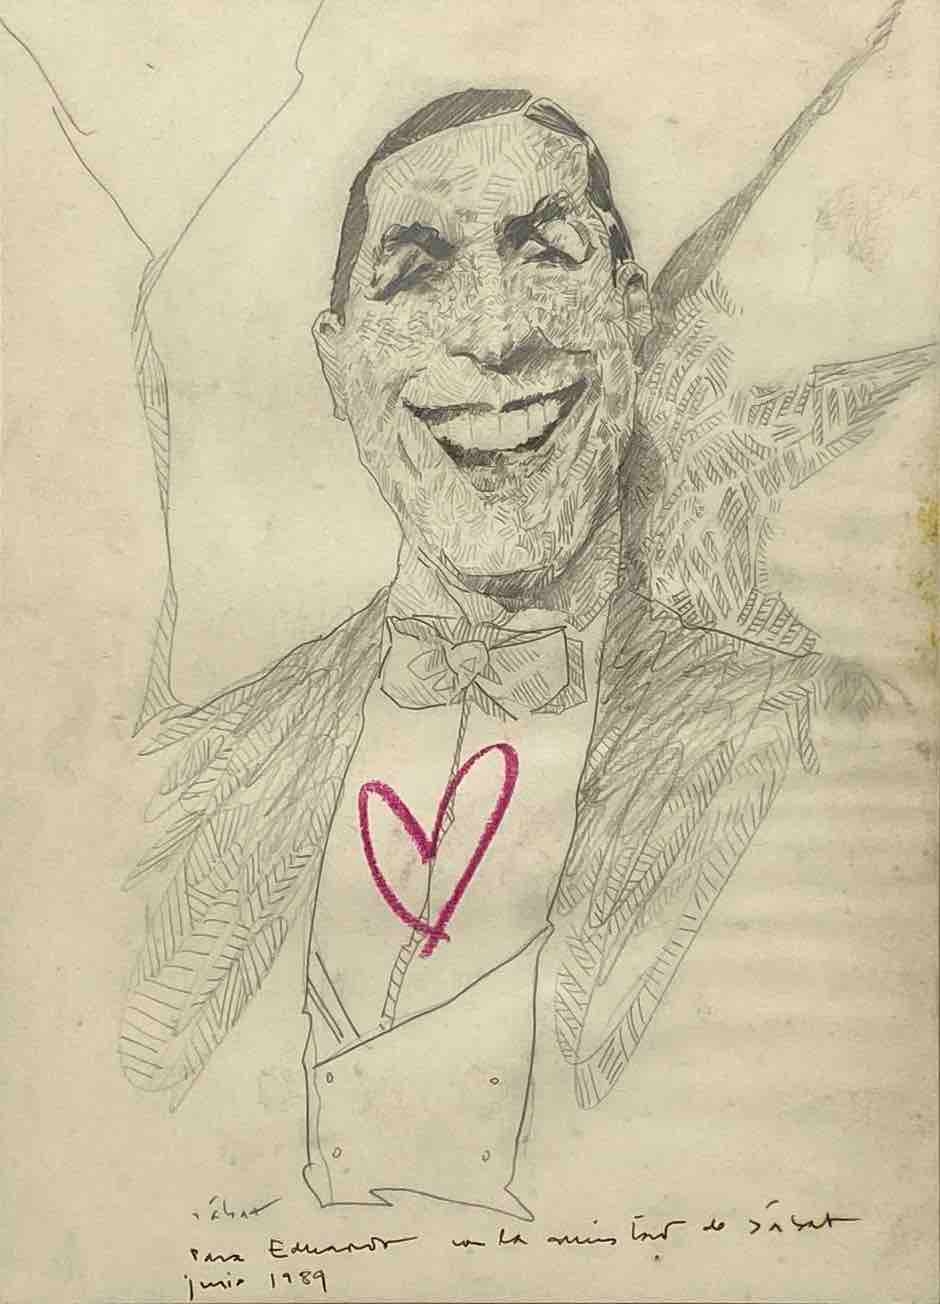 Artwork by Hermenegildo Sabat, Carlos Gardel, Made of Pencil on paper